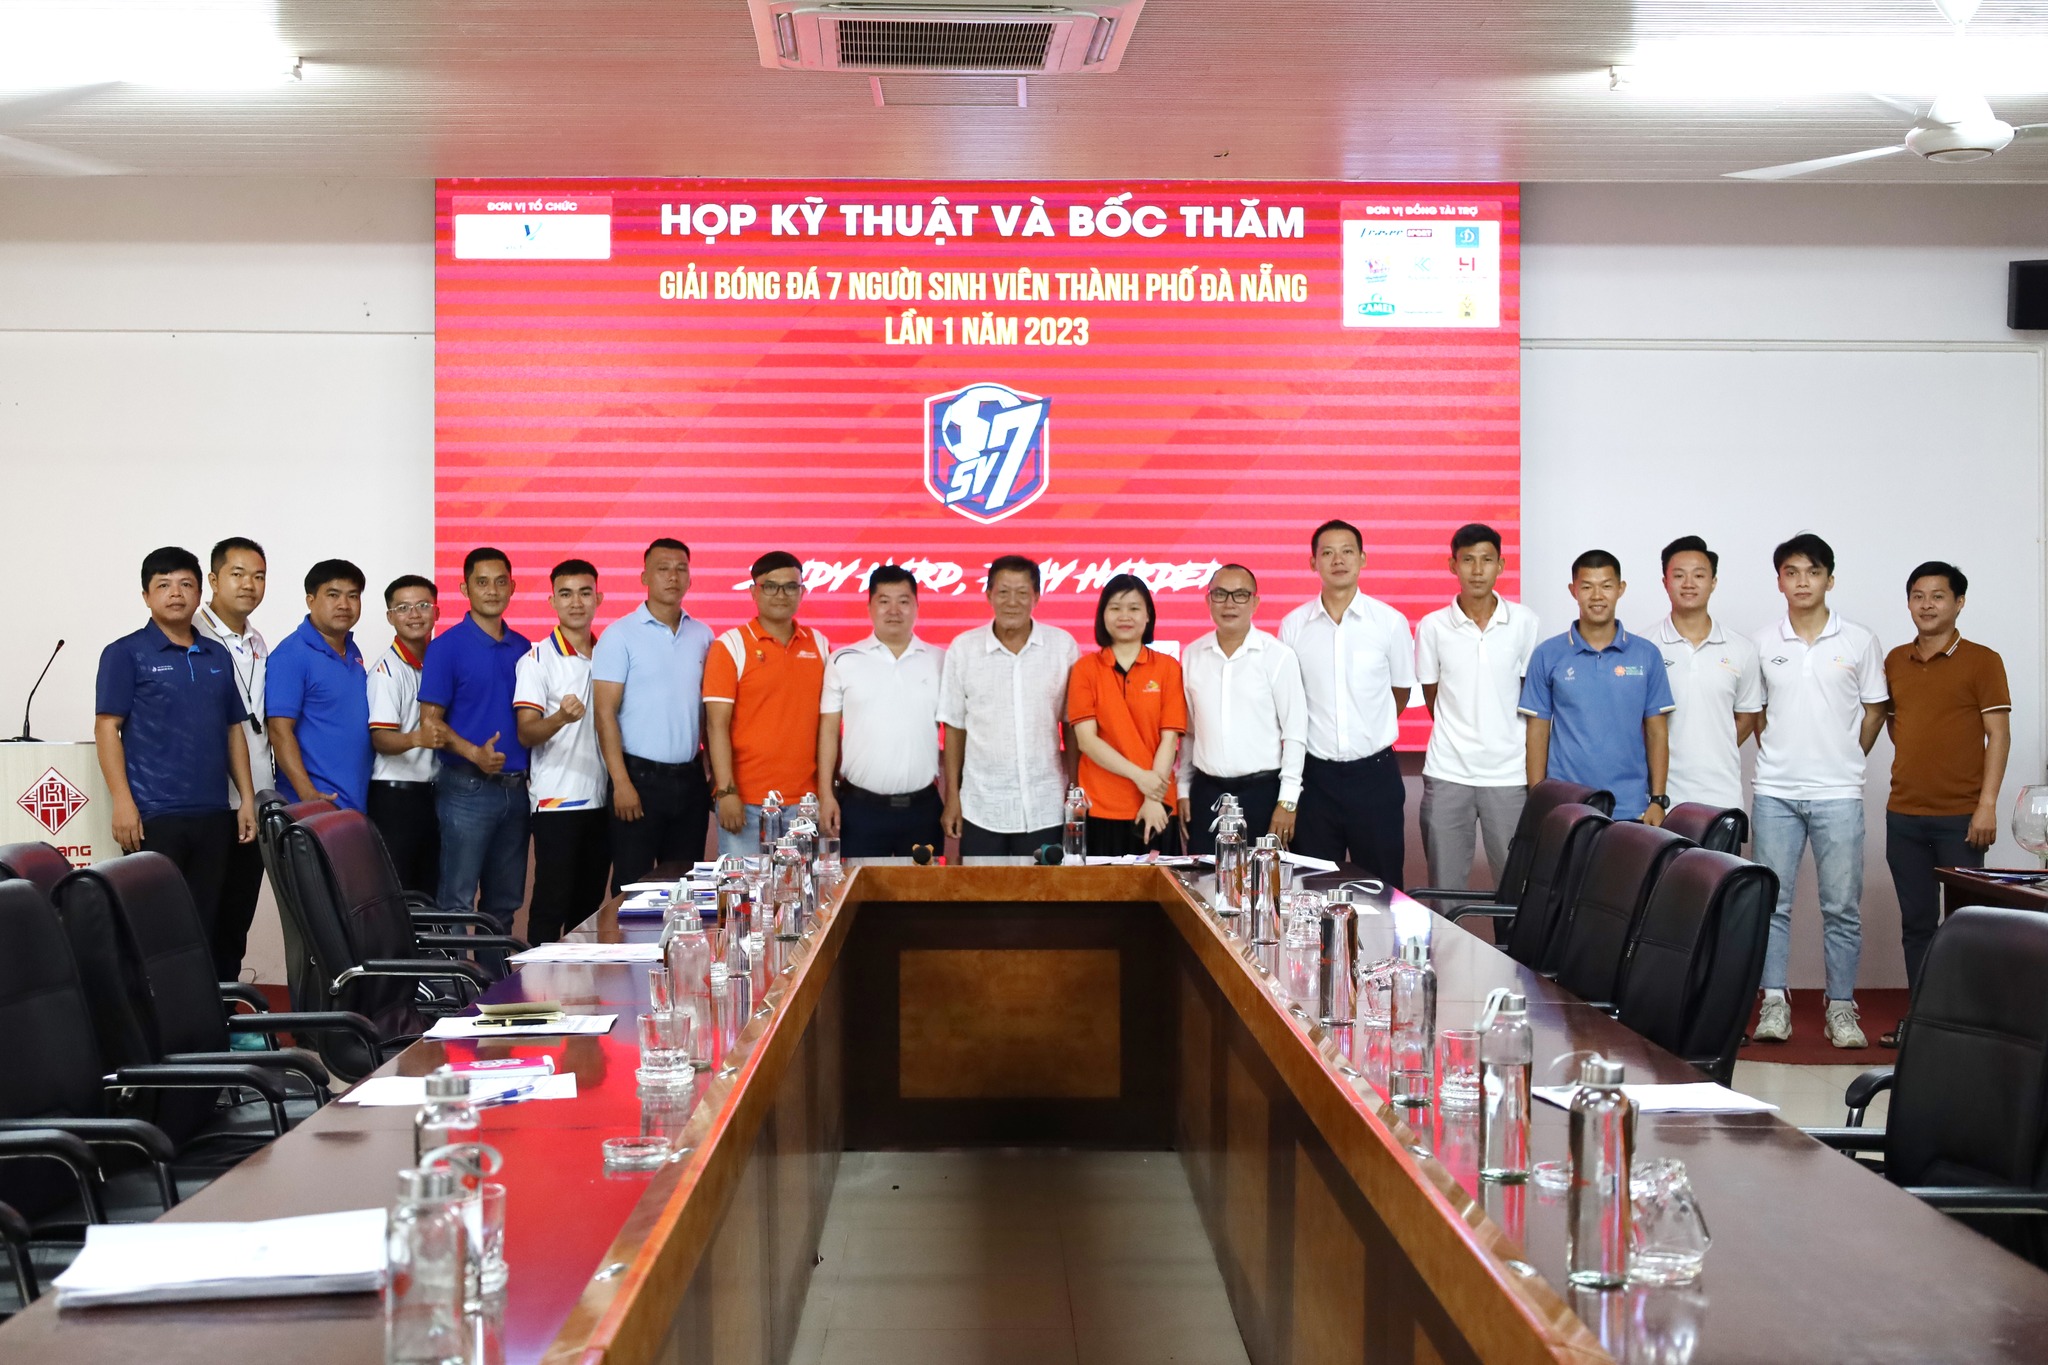 Buổi Họp kỹ thuật và bốc thăm Giải bóng đá 7 người sinh viên thành phố Đà Nẵng lần 1 năm 2023 